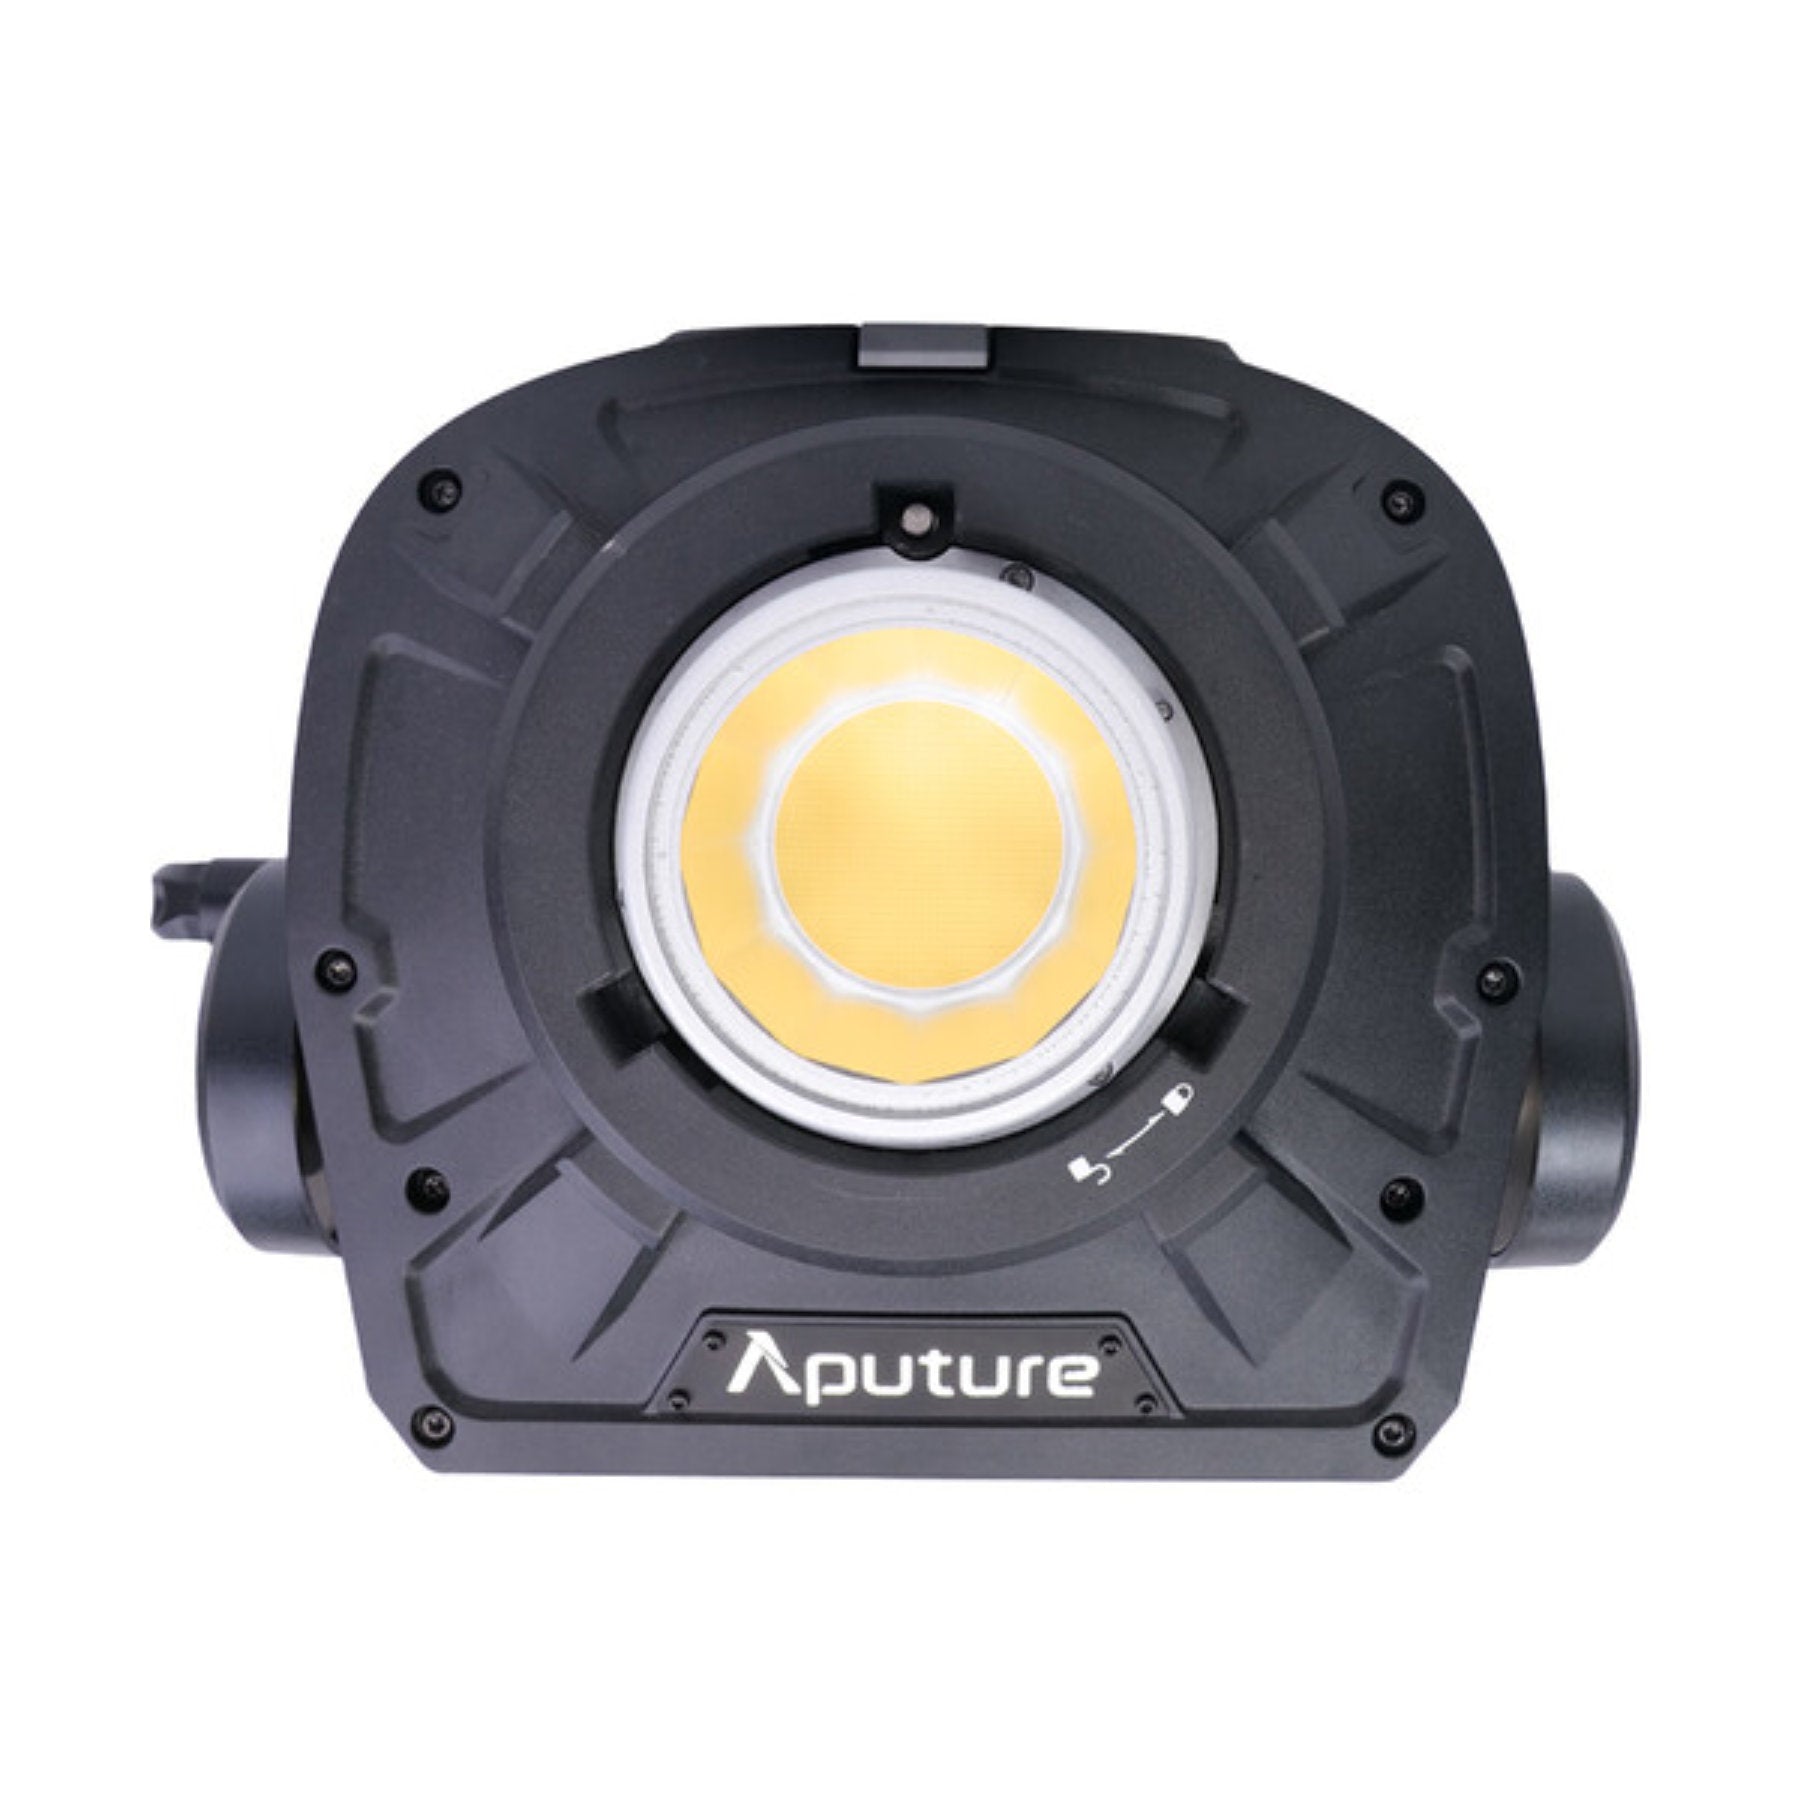 Buy Aputure LS 1200d Pro LED Light at Topic Store